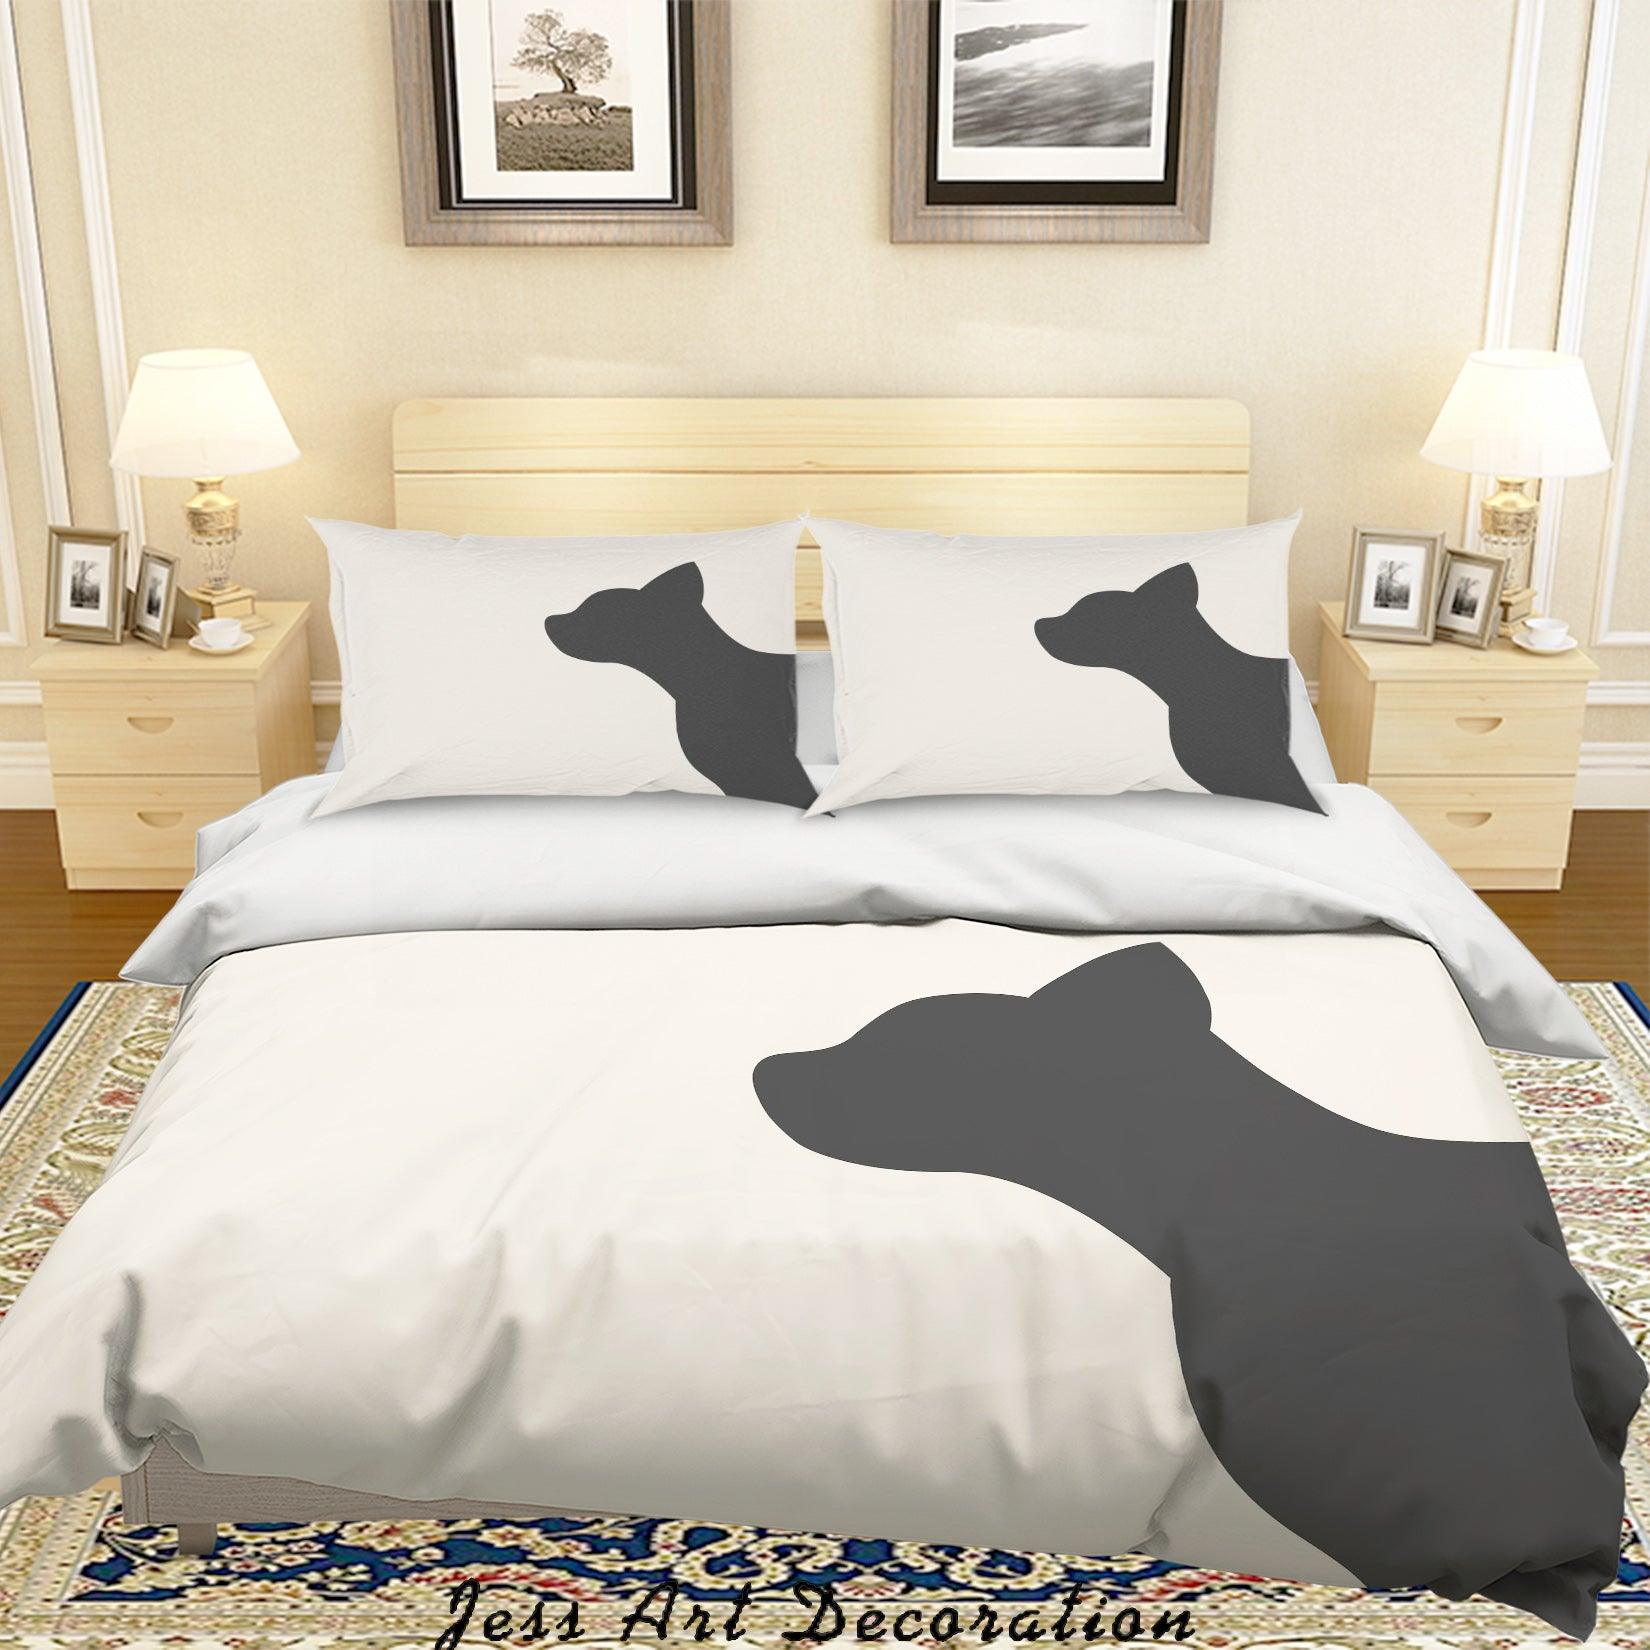 3D White Black Cat Kitty Quilt Cover Set Bedding Set Duvet Cover Pillowcases SF16- Jess Art Decoration